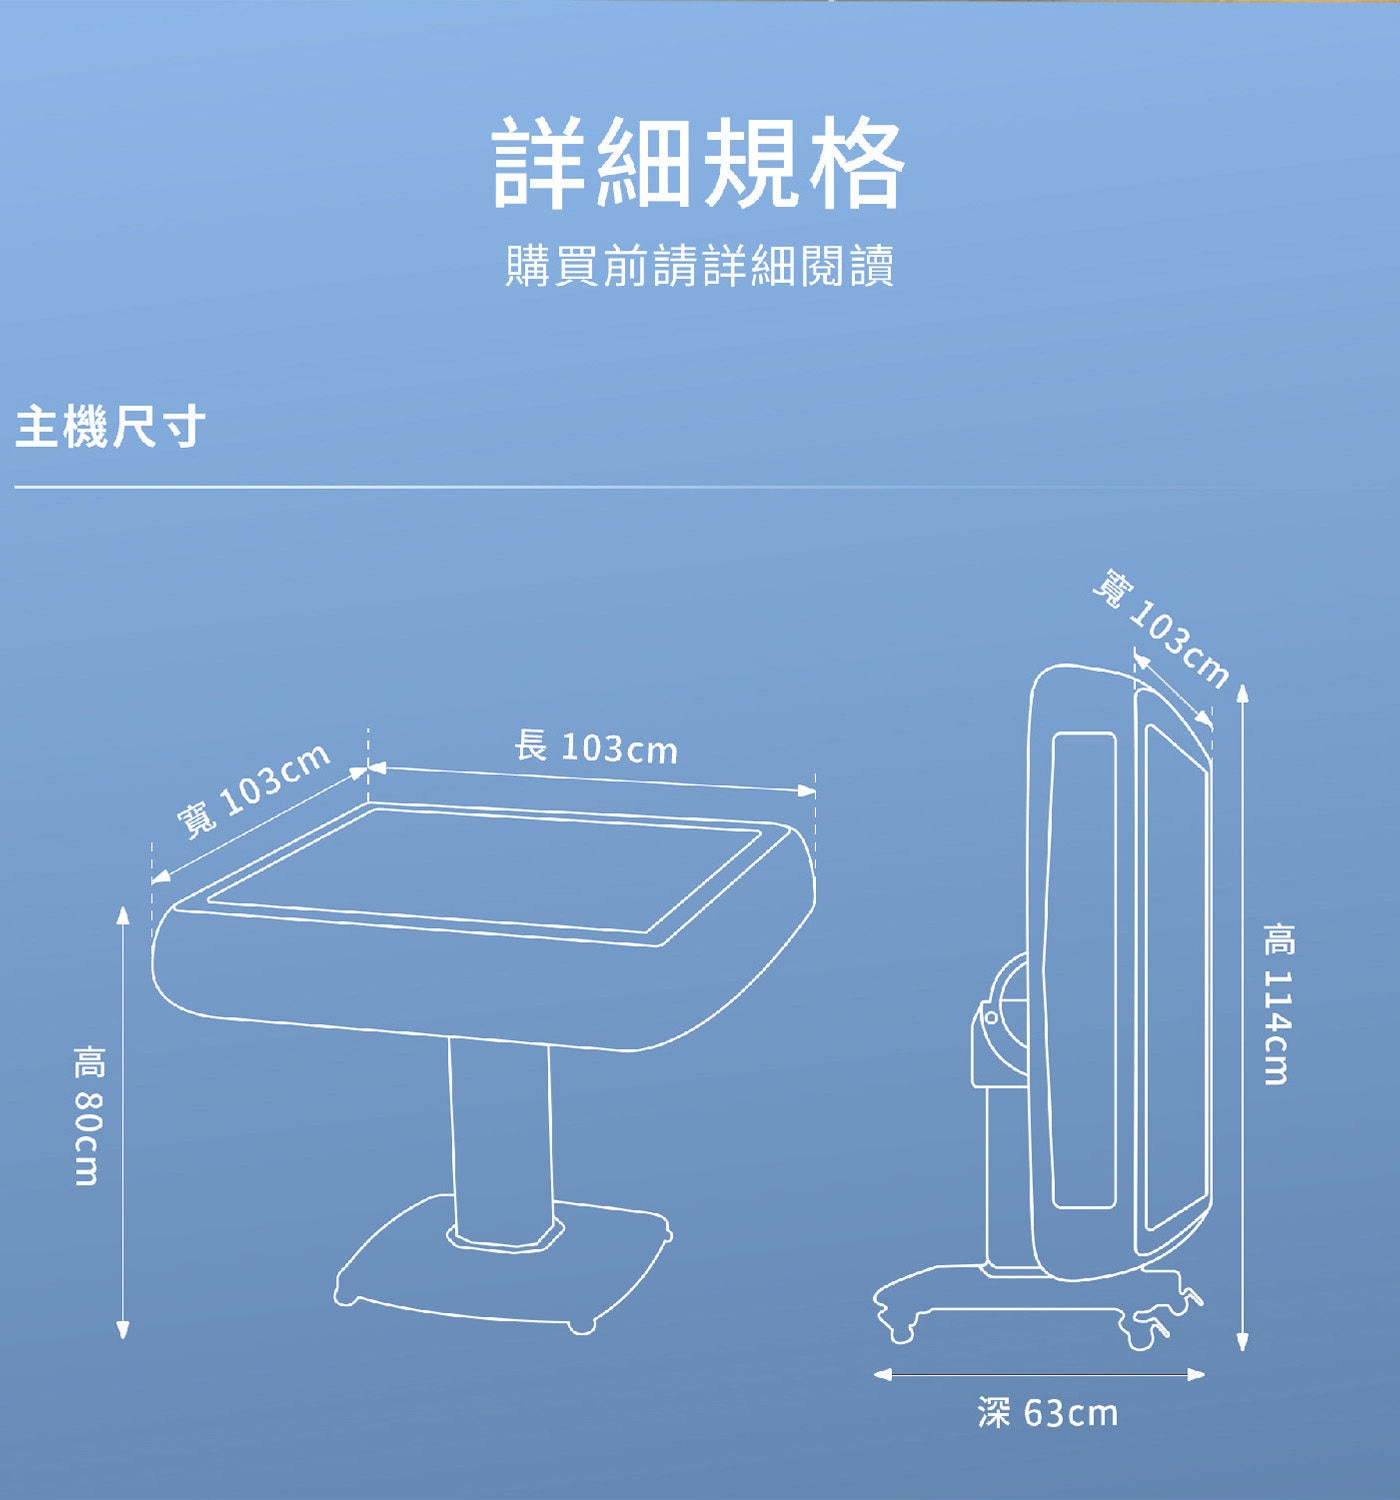 東方不敗 摺疊電動麻將桌 主機尺寸 長103公分 寬103公分 高80公分